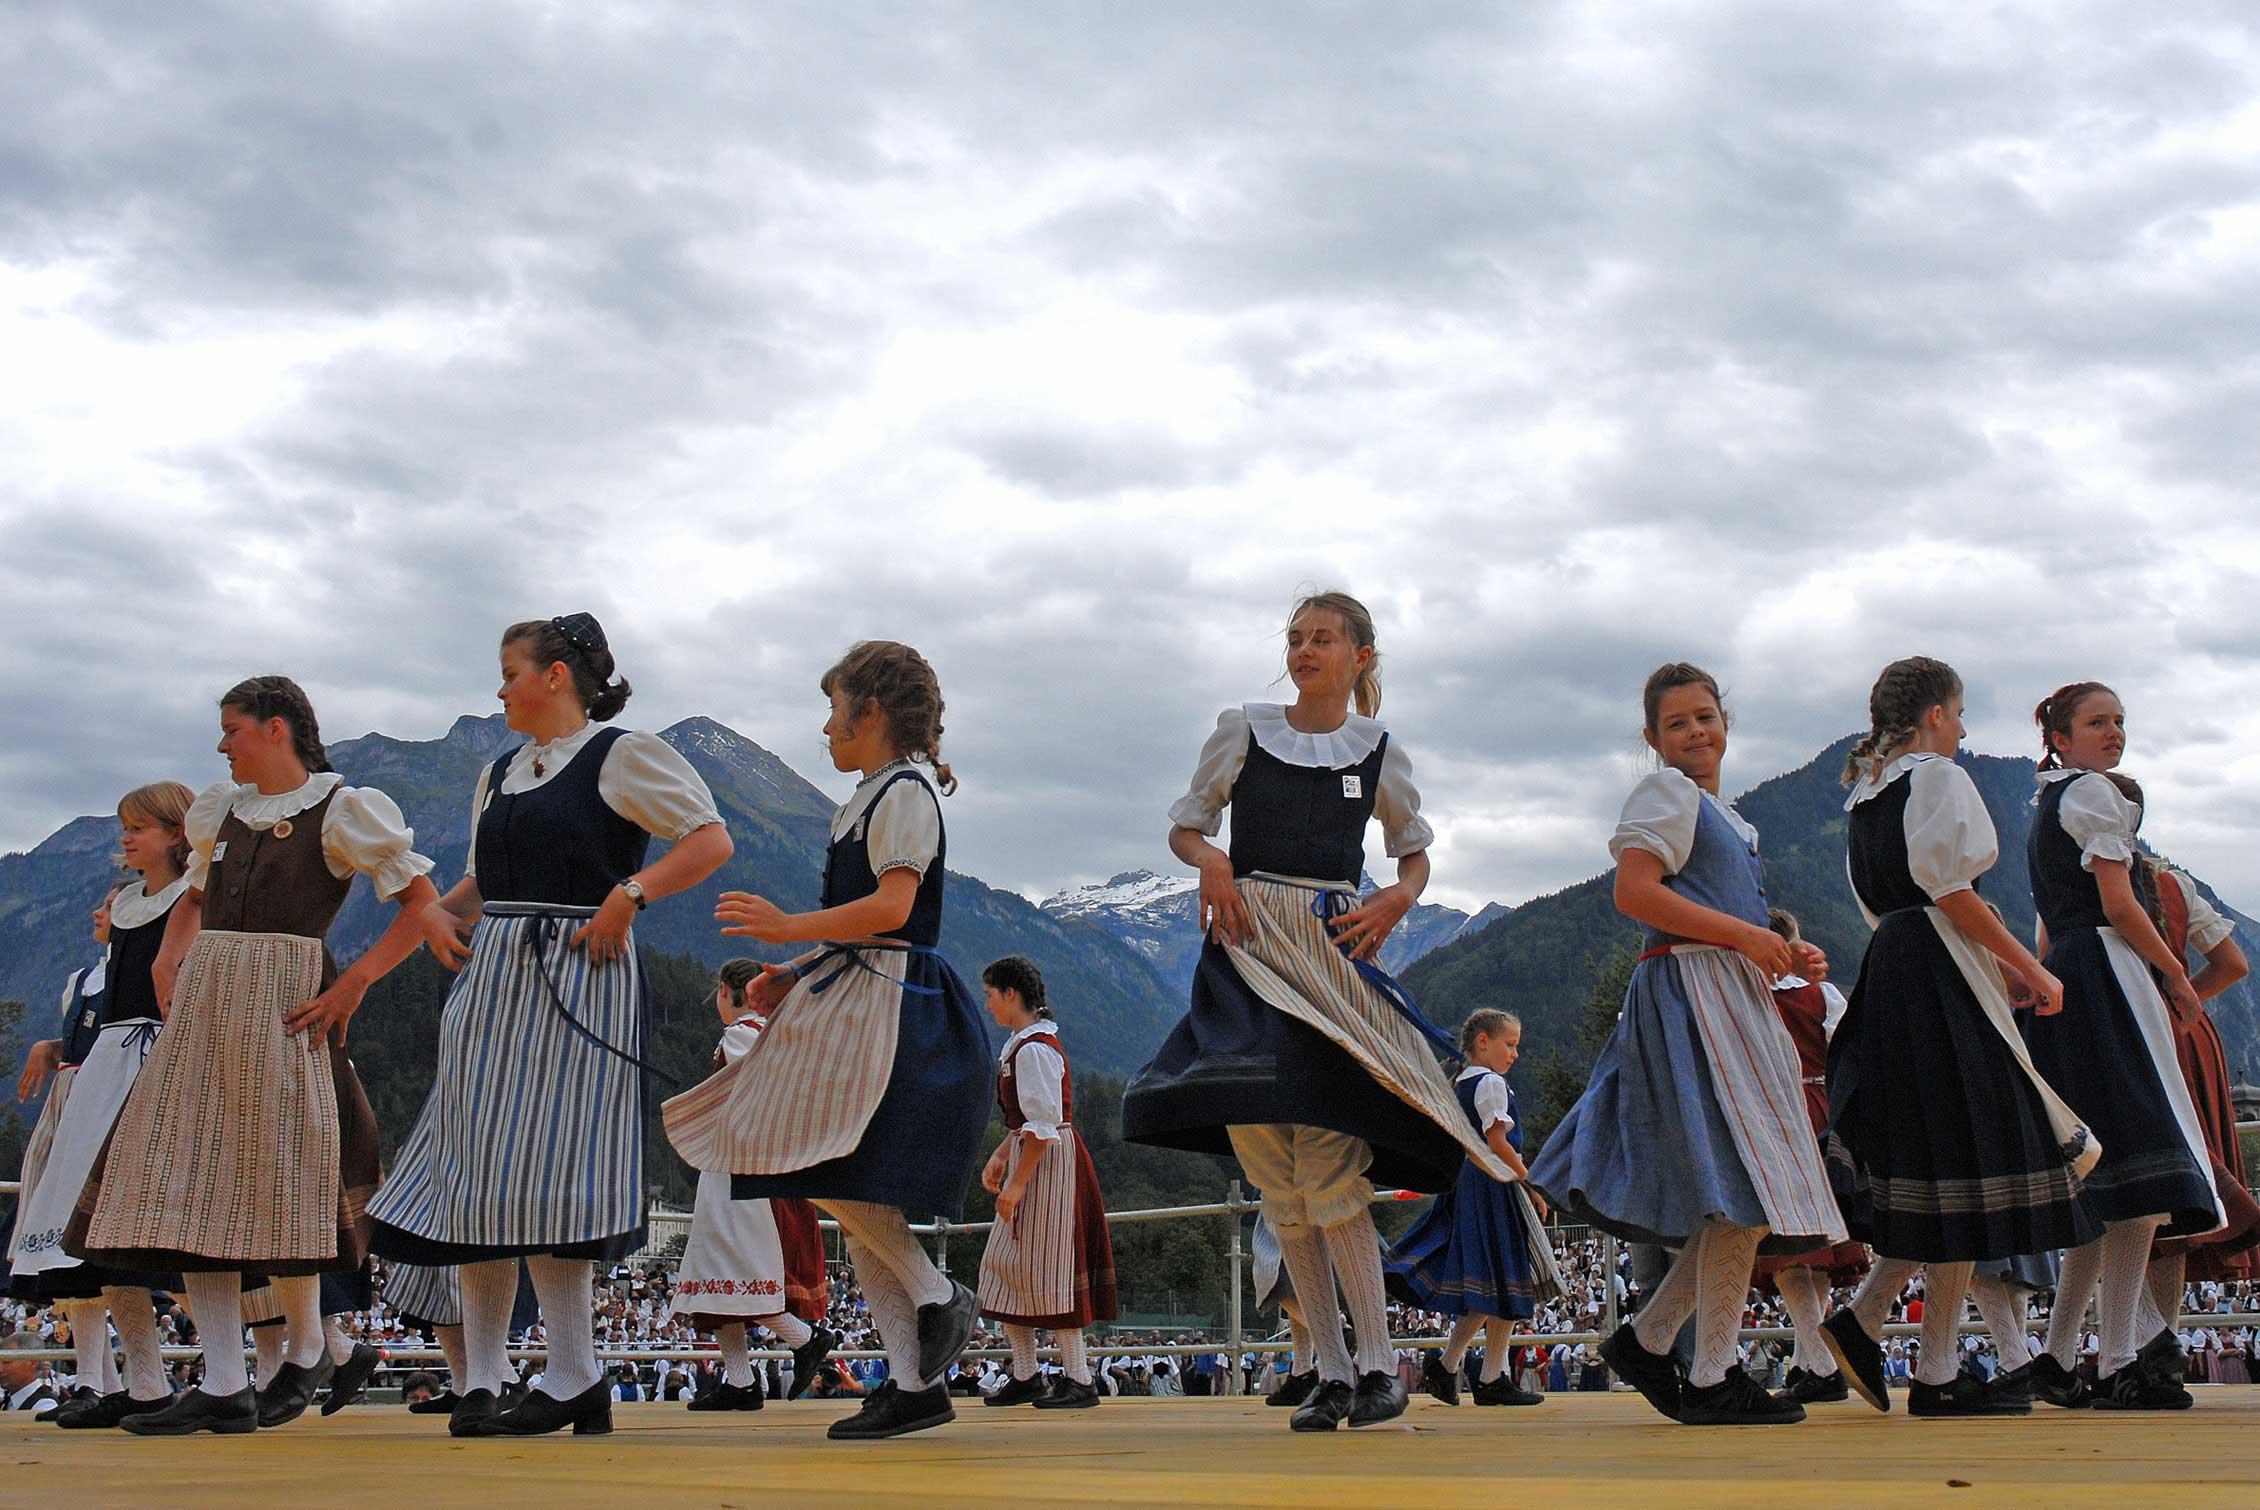 A traditional costume dance at the 2006 Unspunnen festival © Steiner/Verein Schweizerisches Trachten- und Alphirtenfest Unspunnen